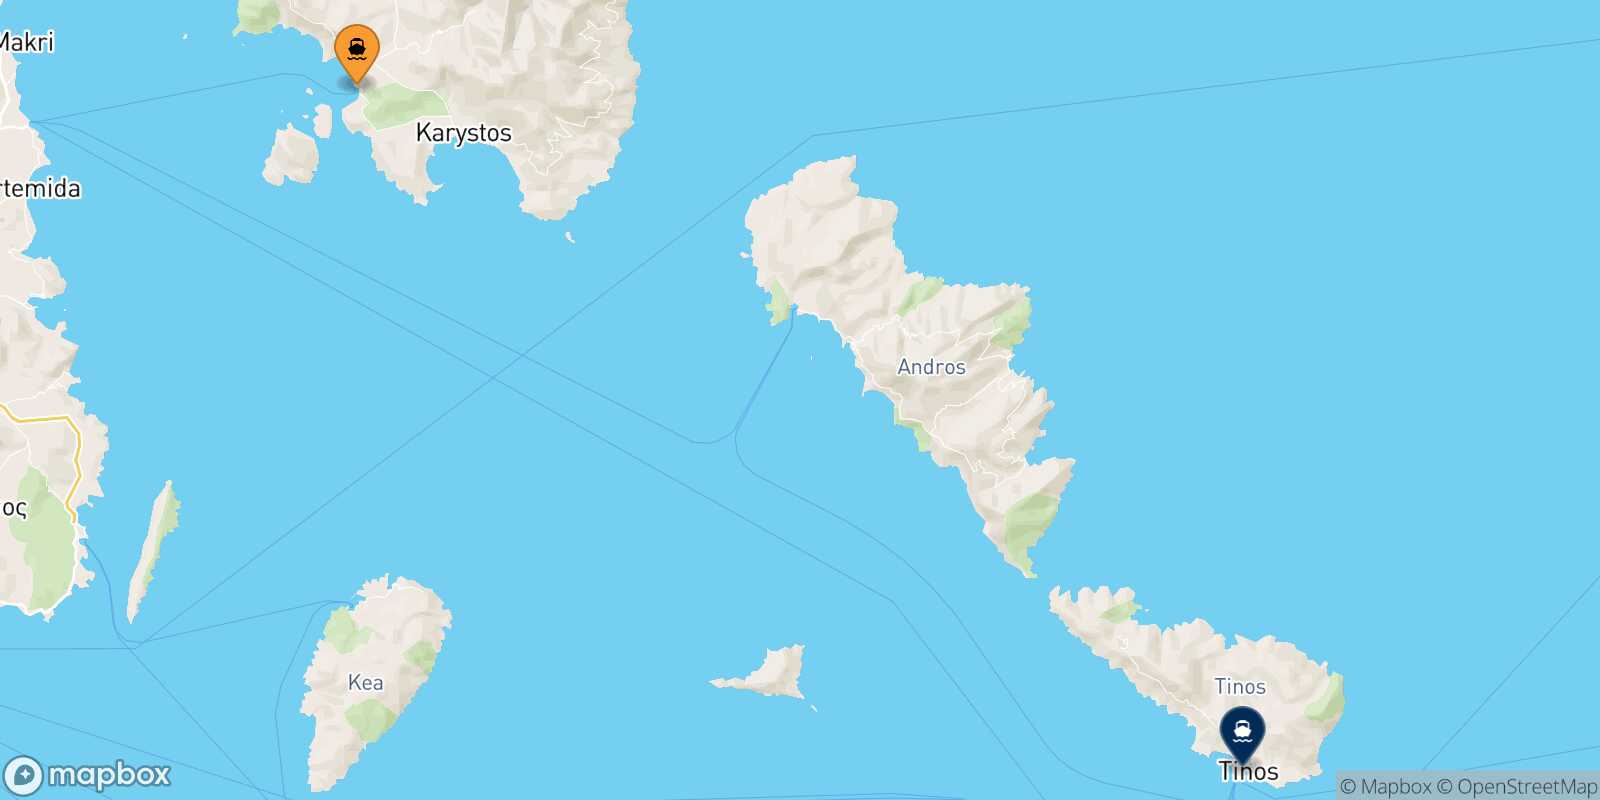 Mappa della rotta Marmari Tinos